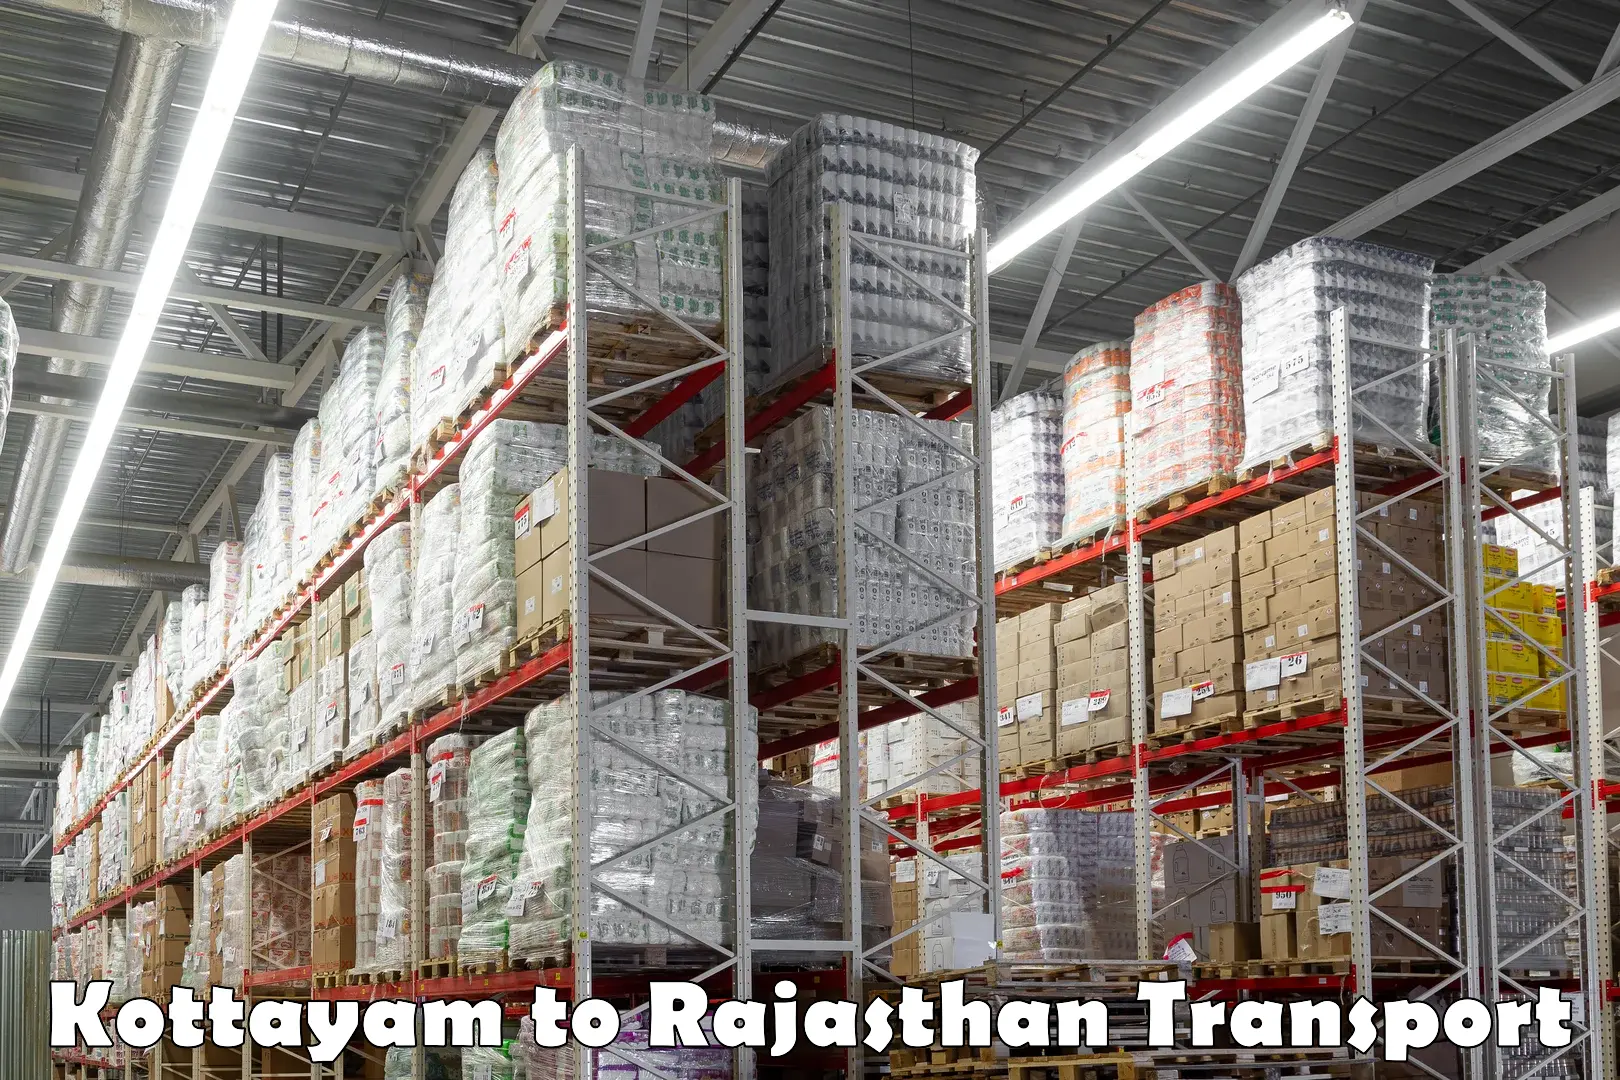 Land transport services Kottayam to Keshoraipatan